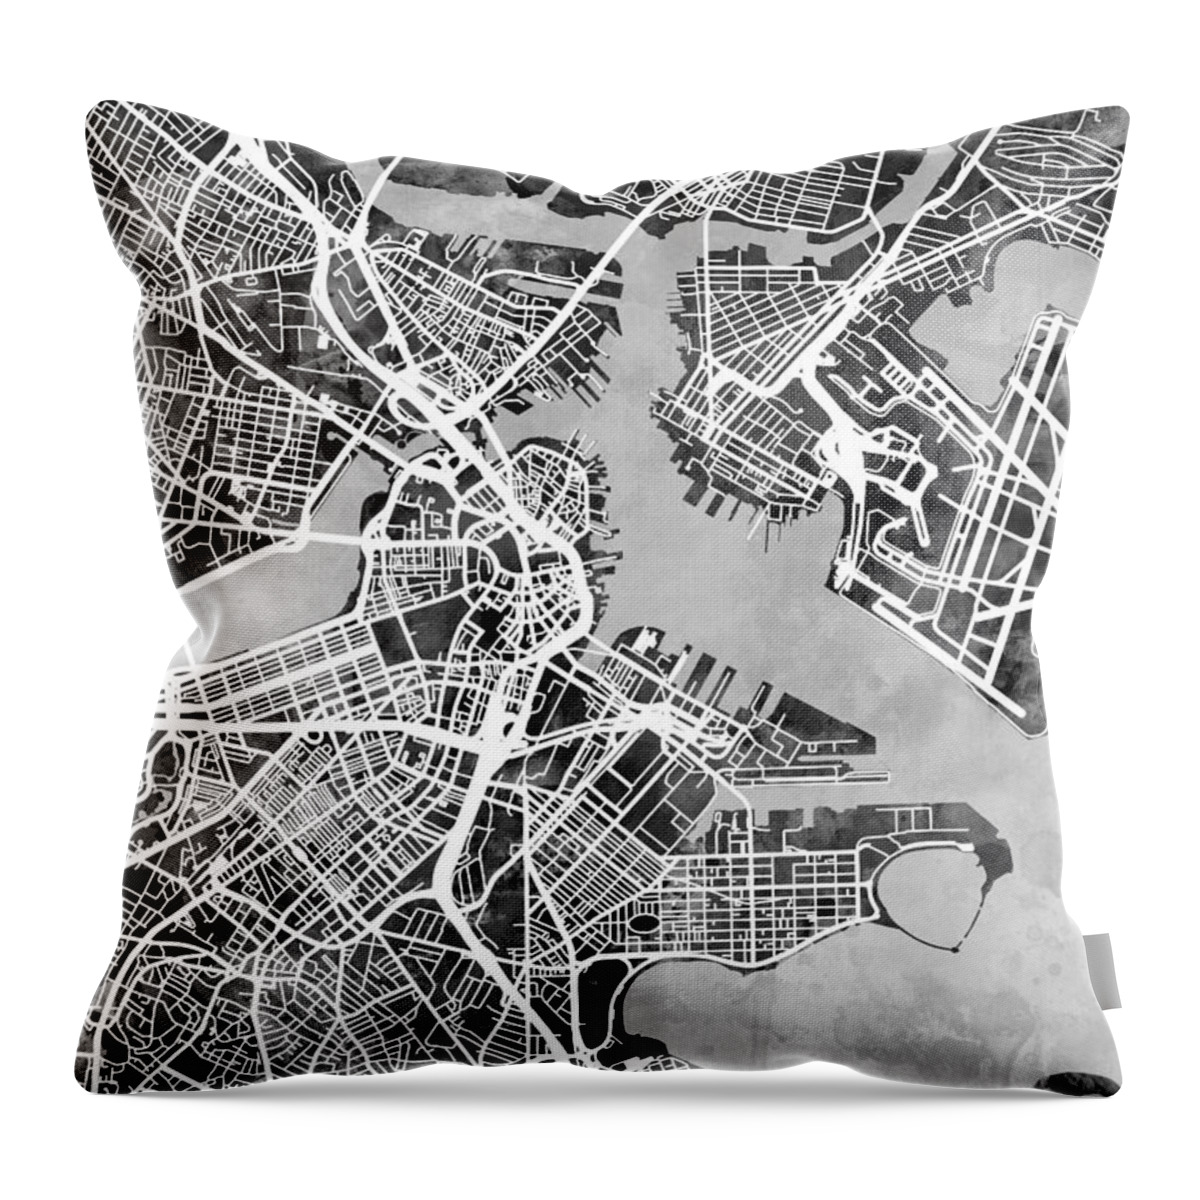 Street Map Throw Pillow featuring the digital art Boston Massachusetts Street Map #8 by Michael Tompsett